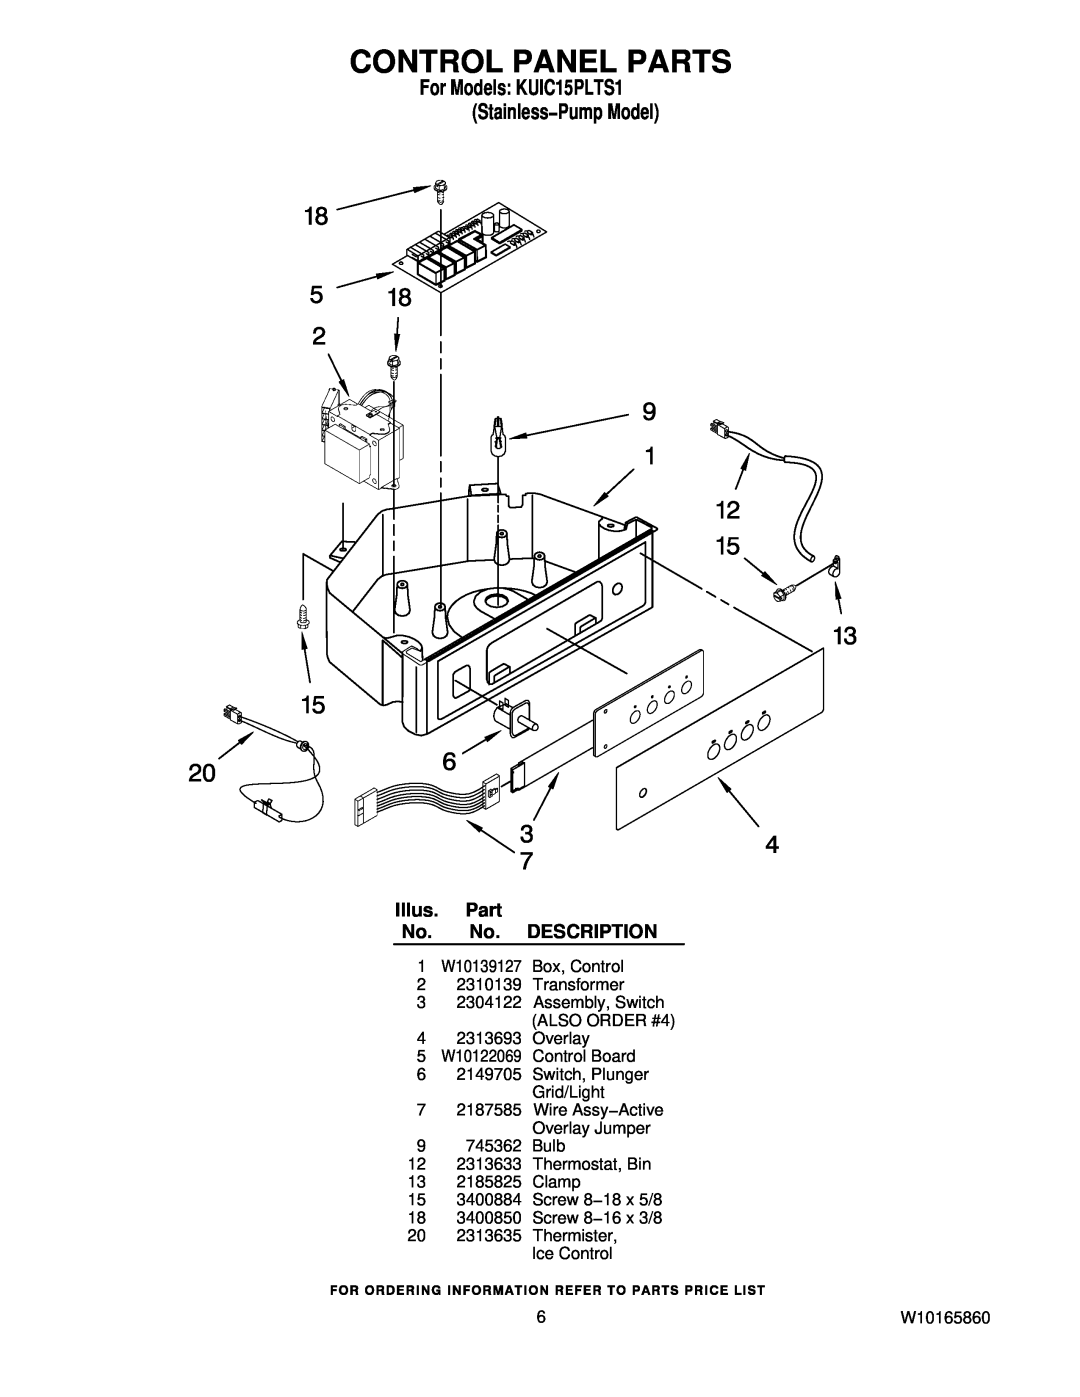 KitchenAid manual Control Panel Parts, For Models KUIC15PLTS1 Stainless−Pump Model, Illus. Part No. No. DESCRIPTION 